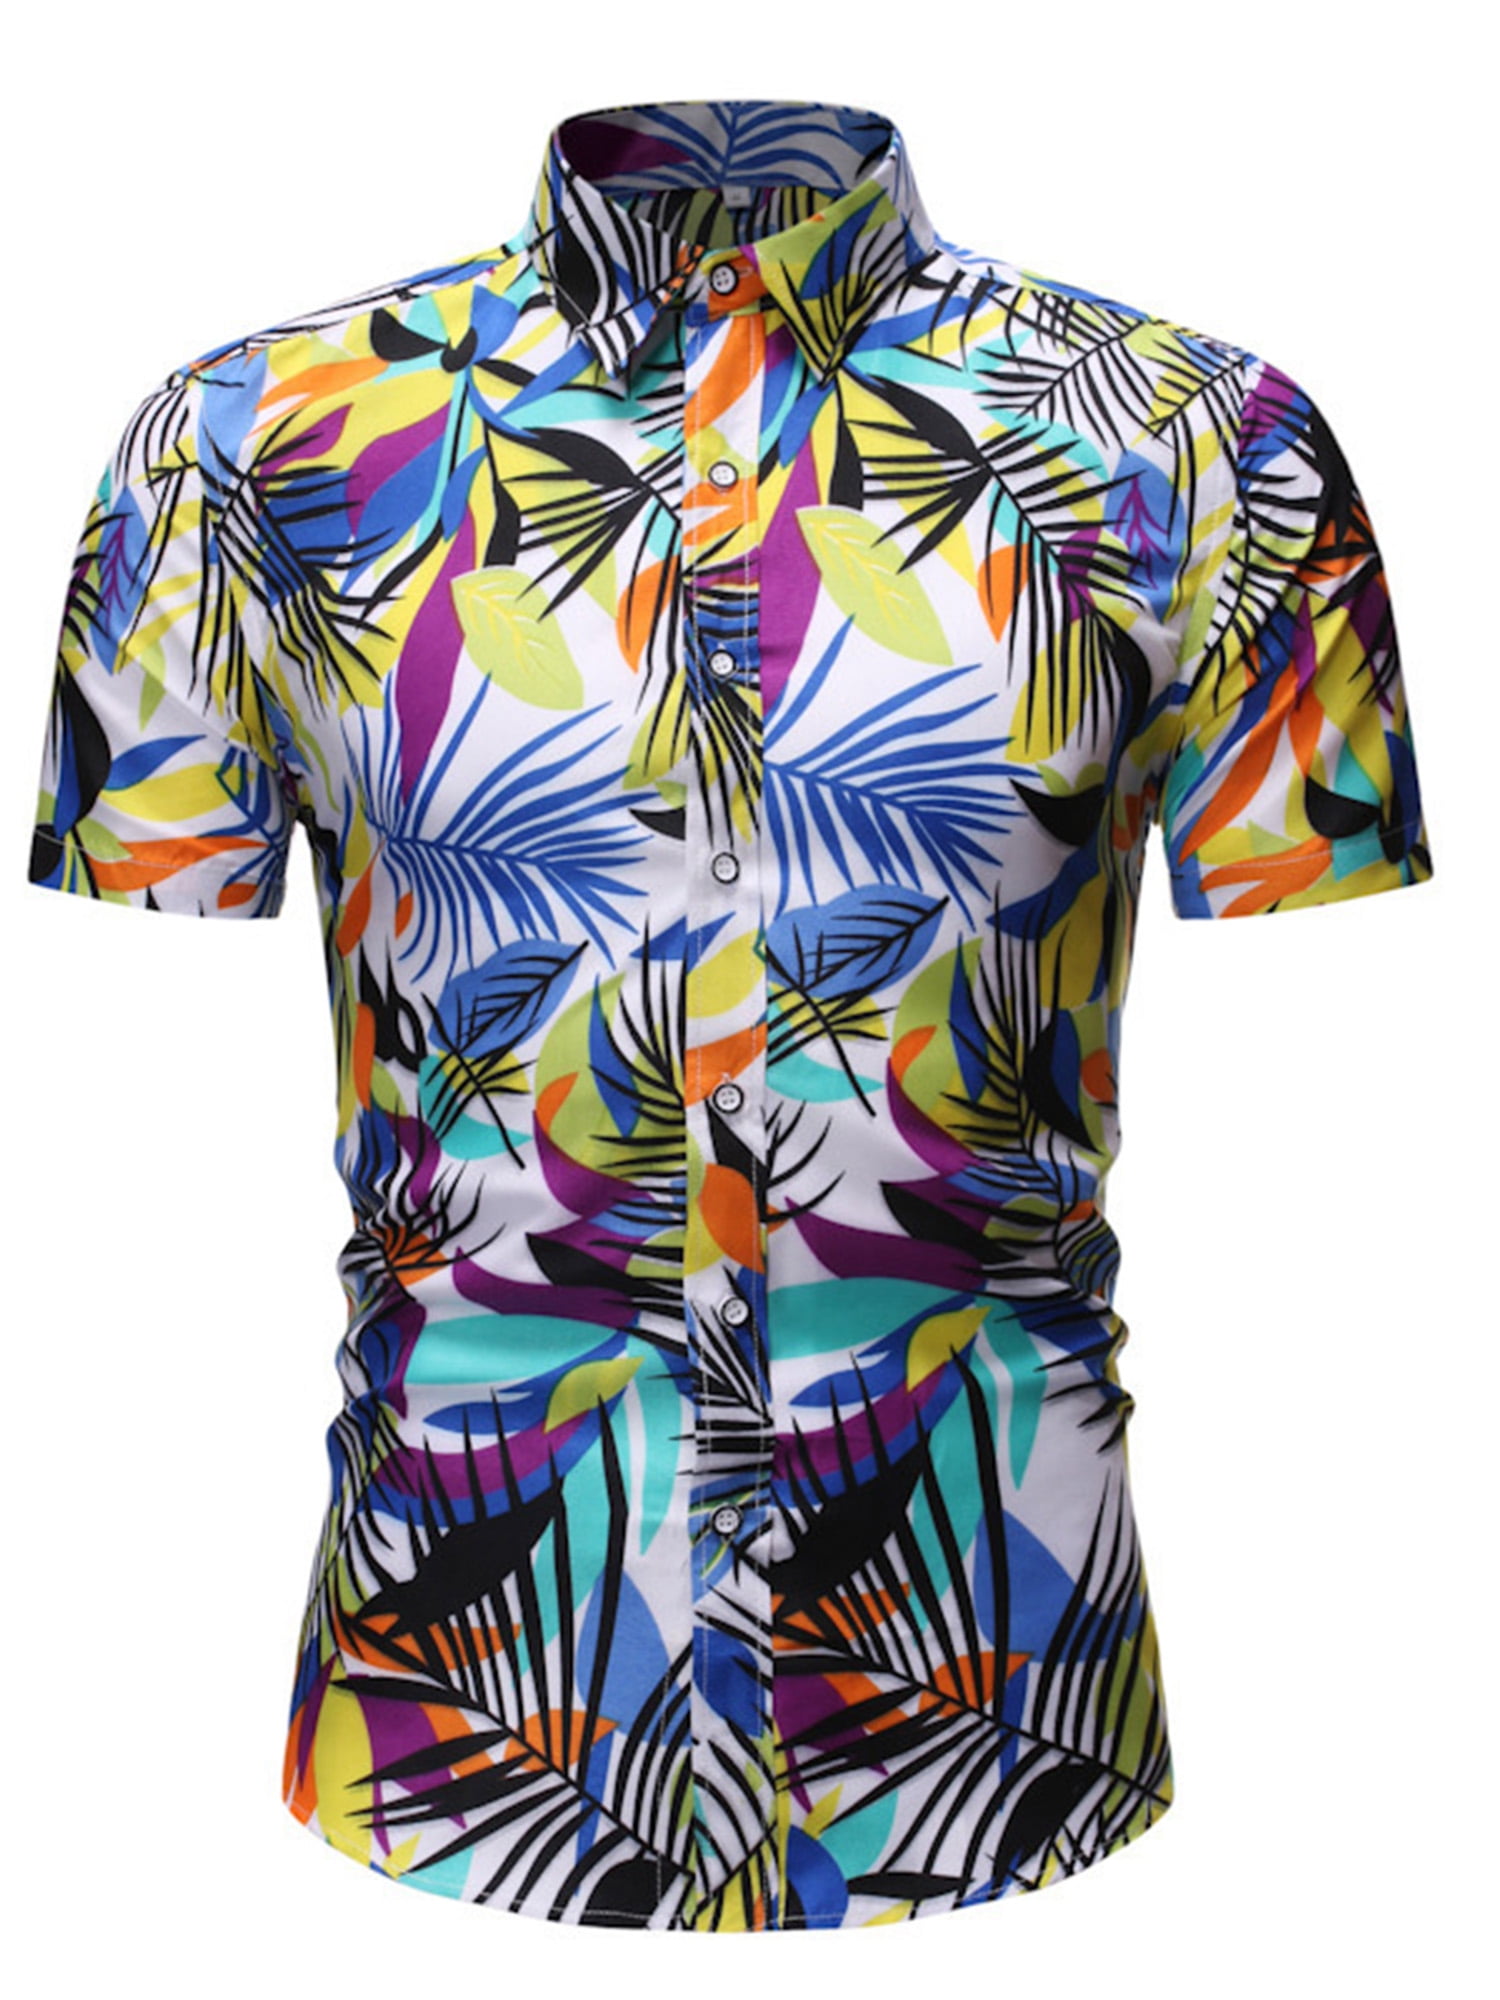 100% Cotton Mens Hawaiian Shirts Male Casual Printed Beach Shirts Short Sleeve Summer Party Shirt